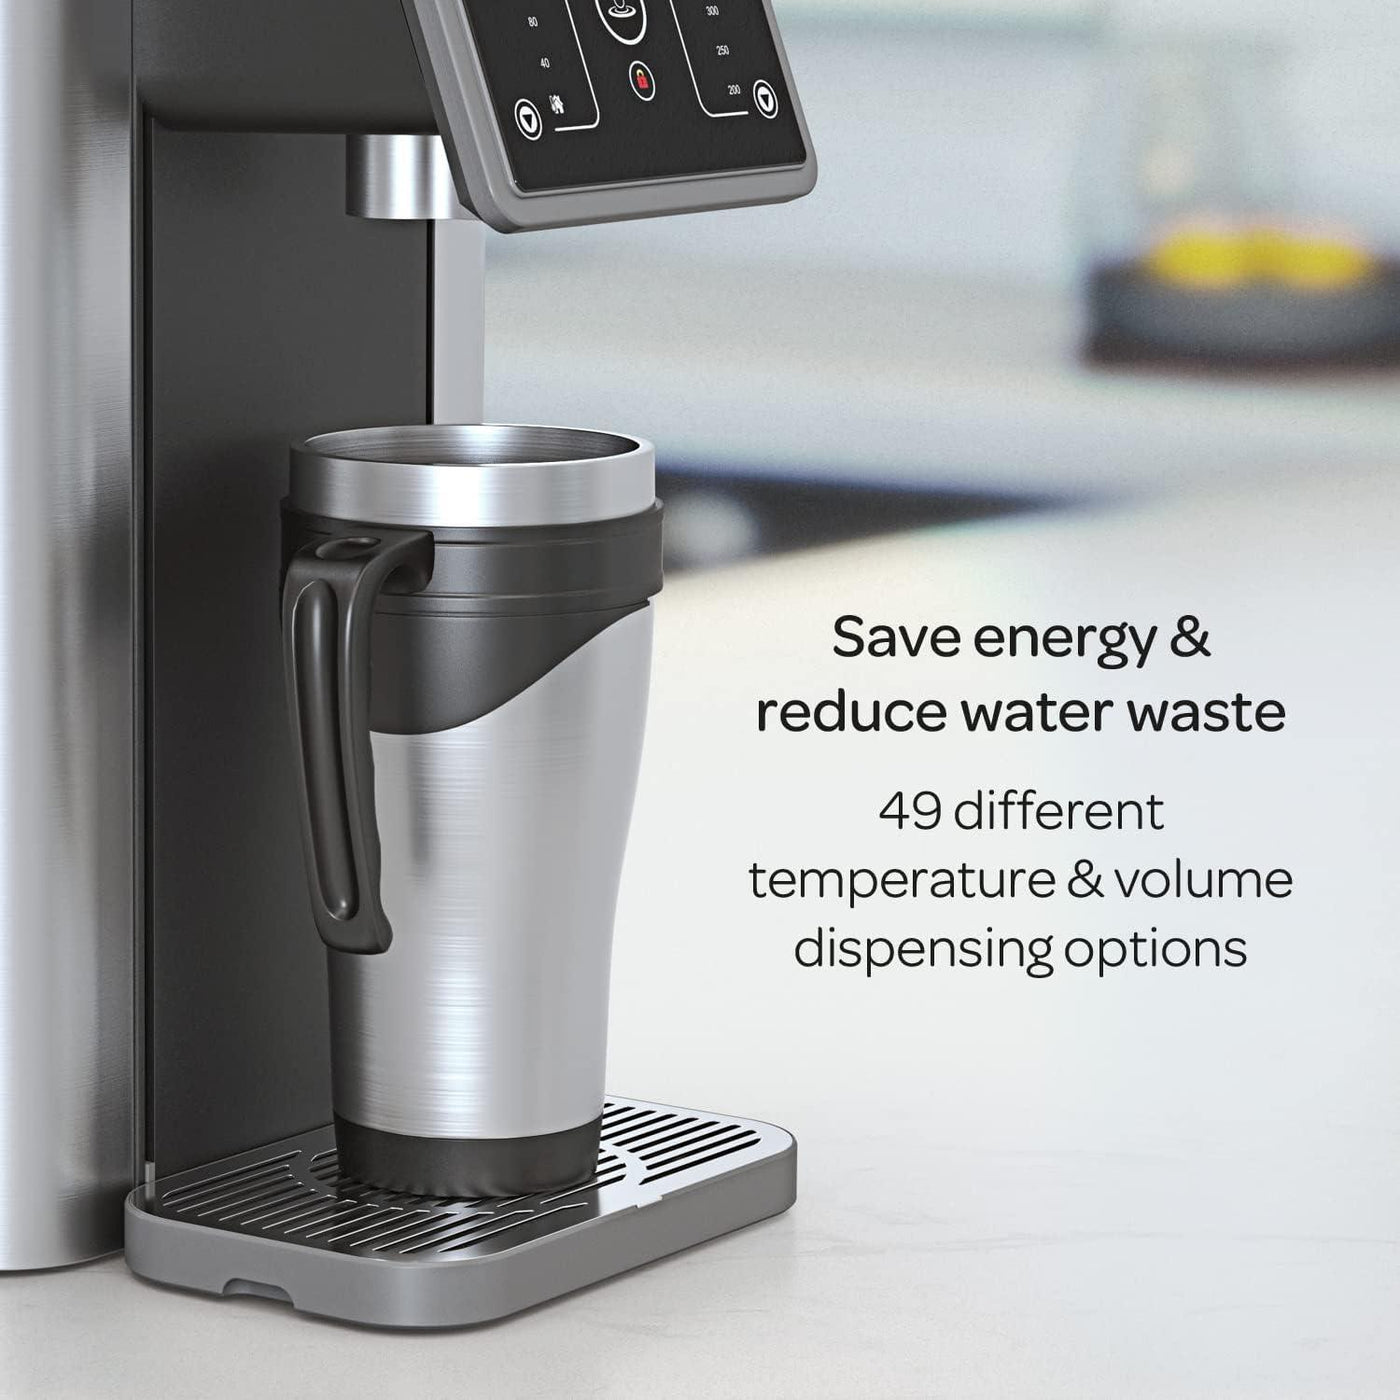 Aqua Optima Aurora Instant Hot Water Dispenser, 3.0 L Capacity - Massive Discounts